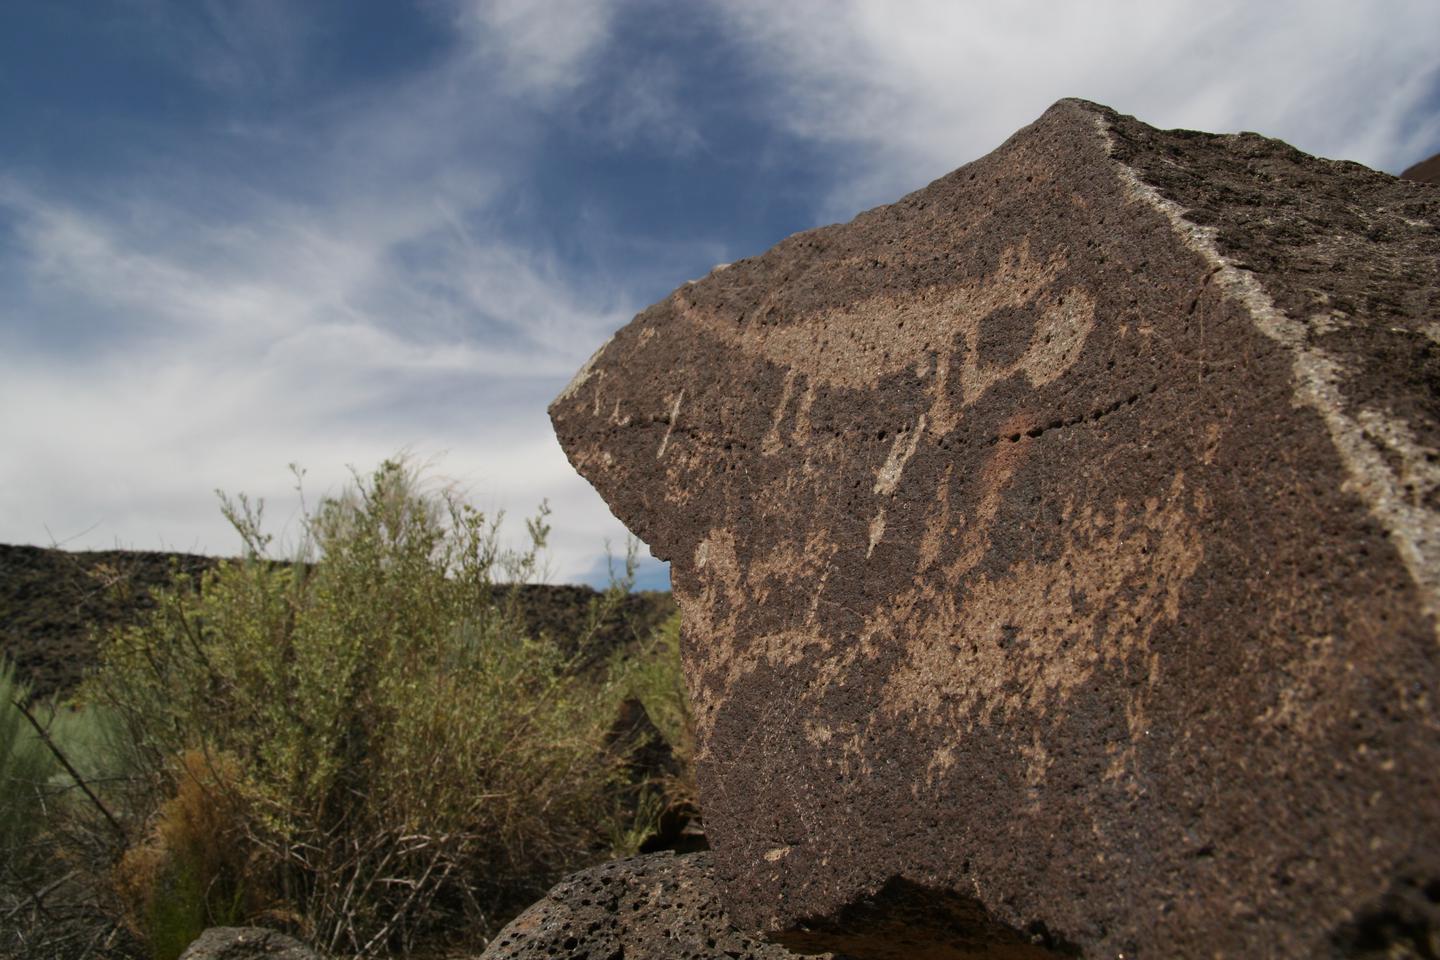 Desert Mammal petroglyph